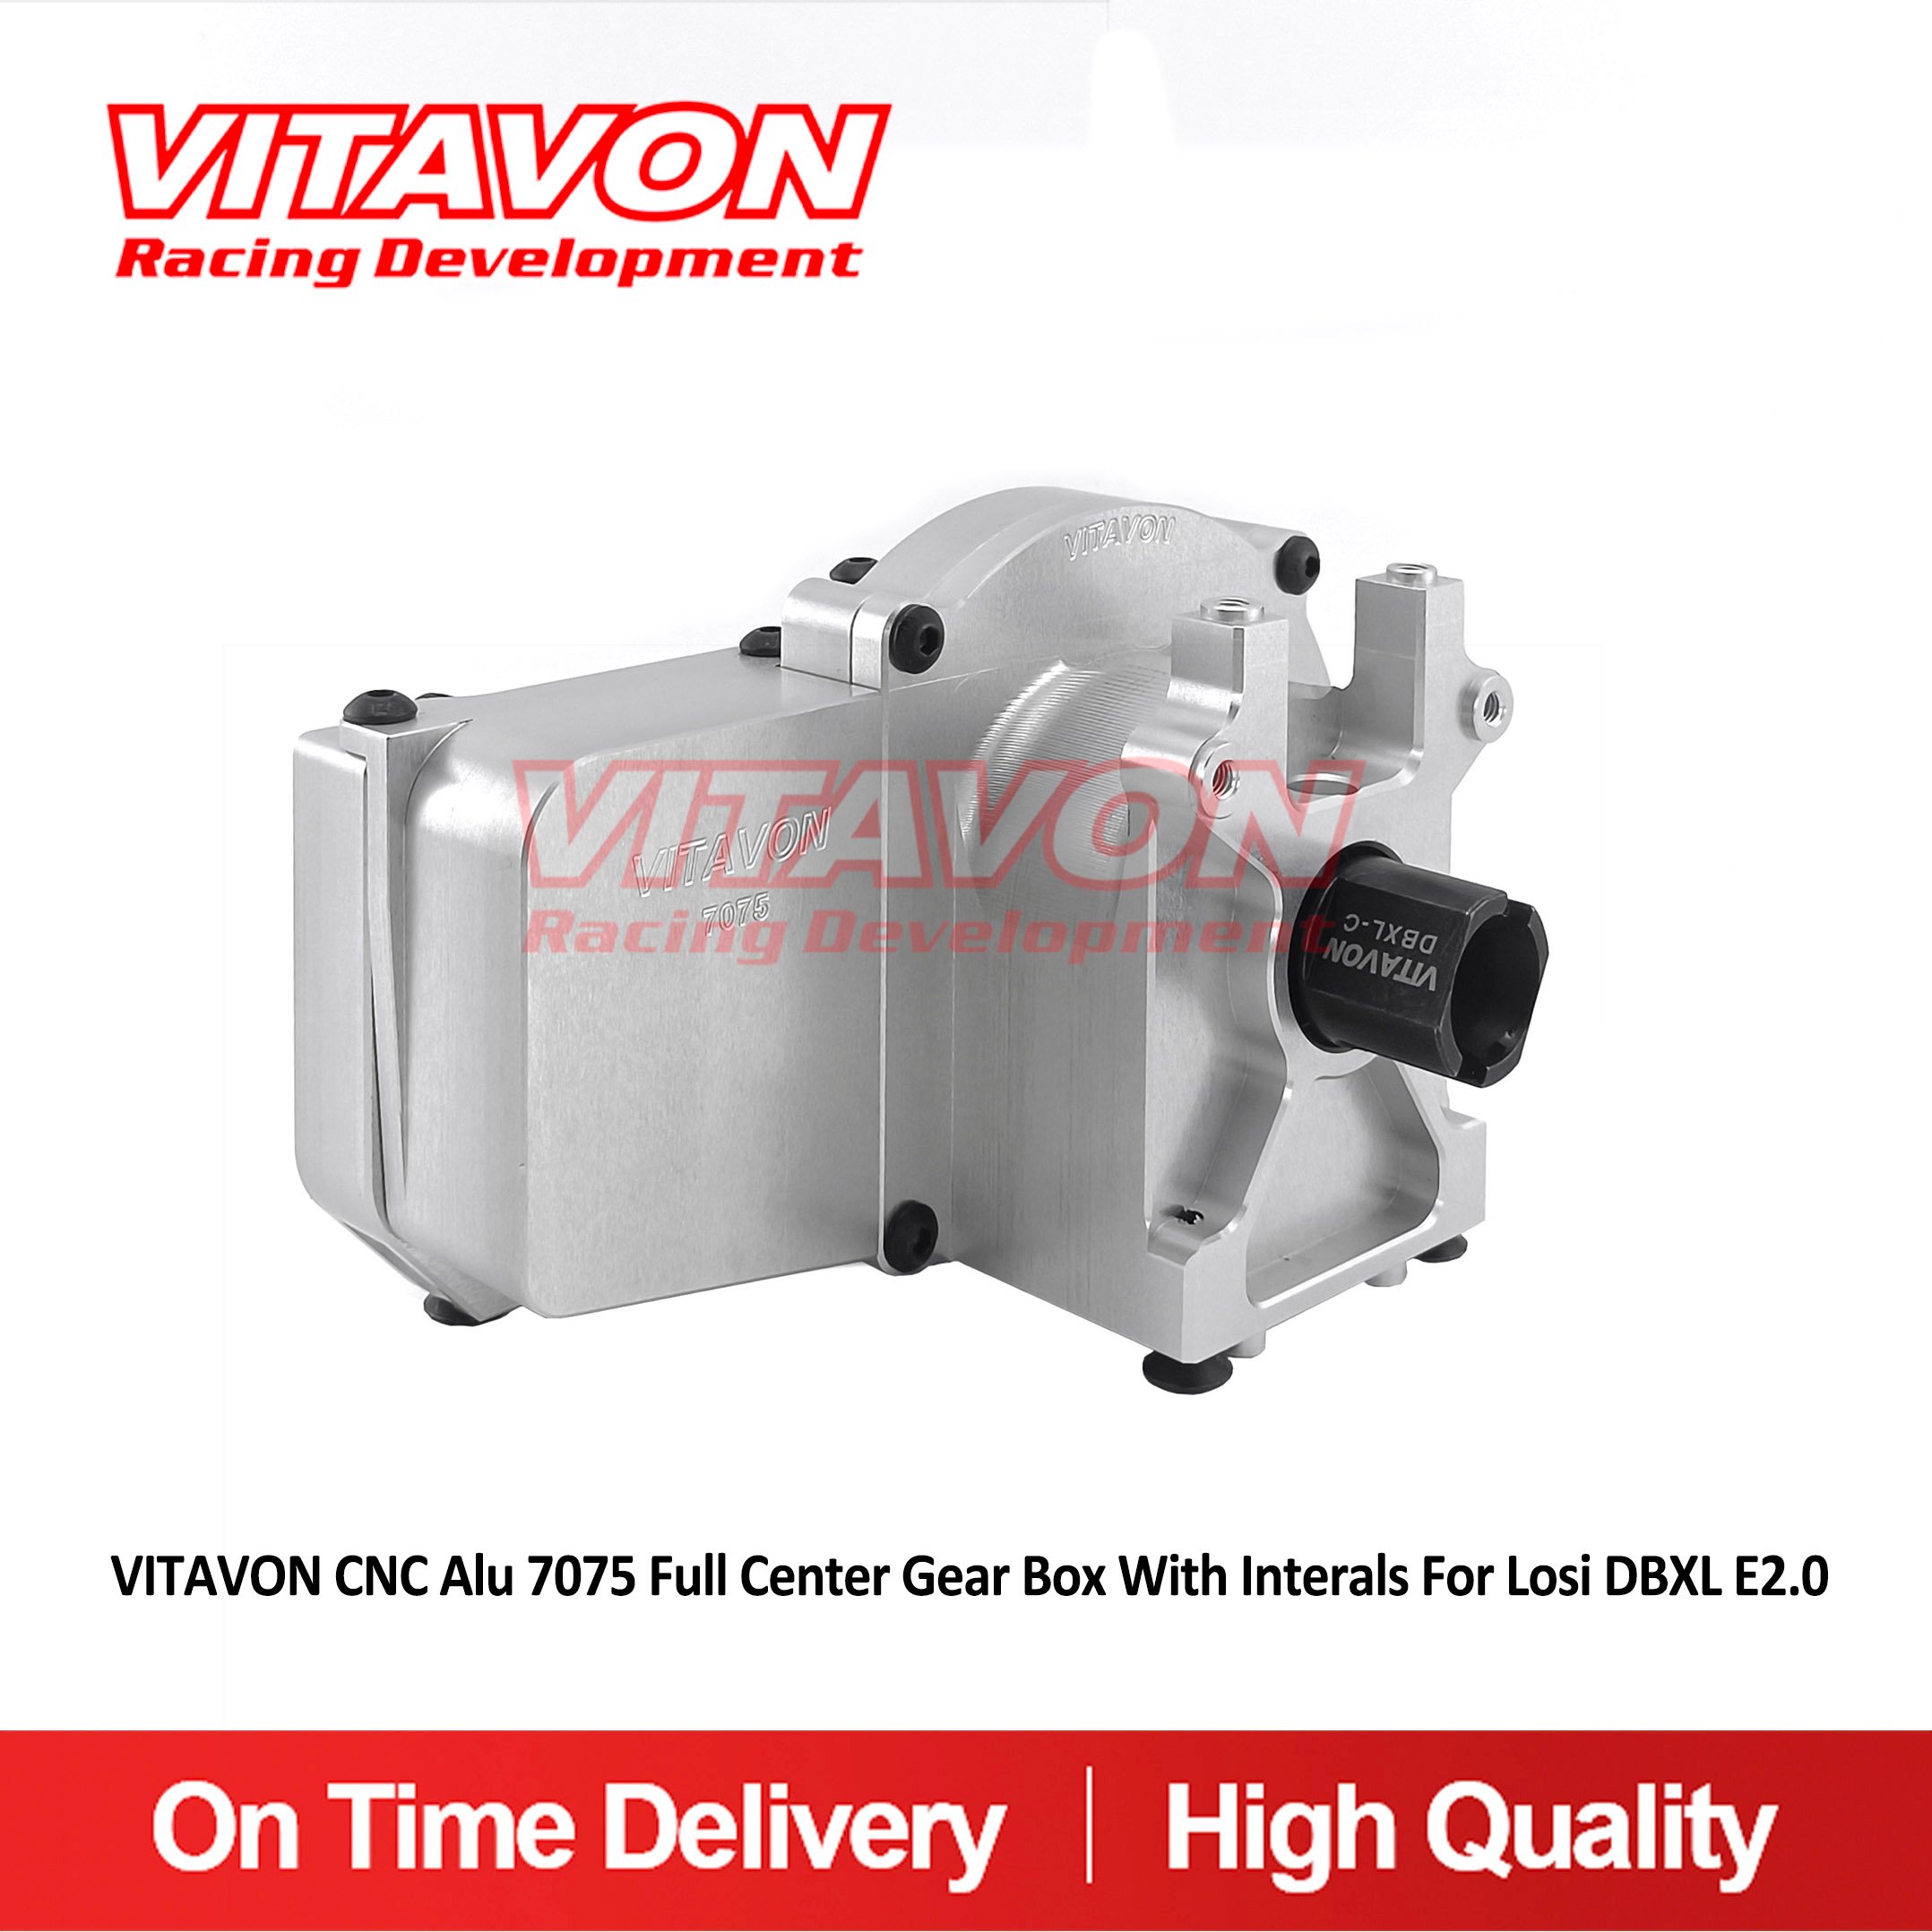 VITAVON CNC Alu 7075 Full Center Gear Box With Interals For Losi DBXL E2.0